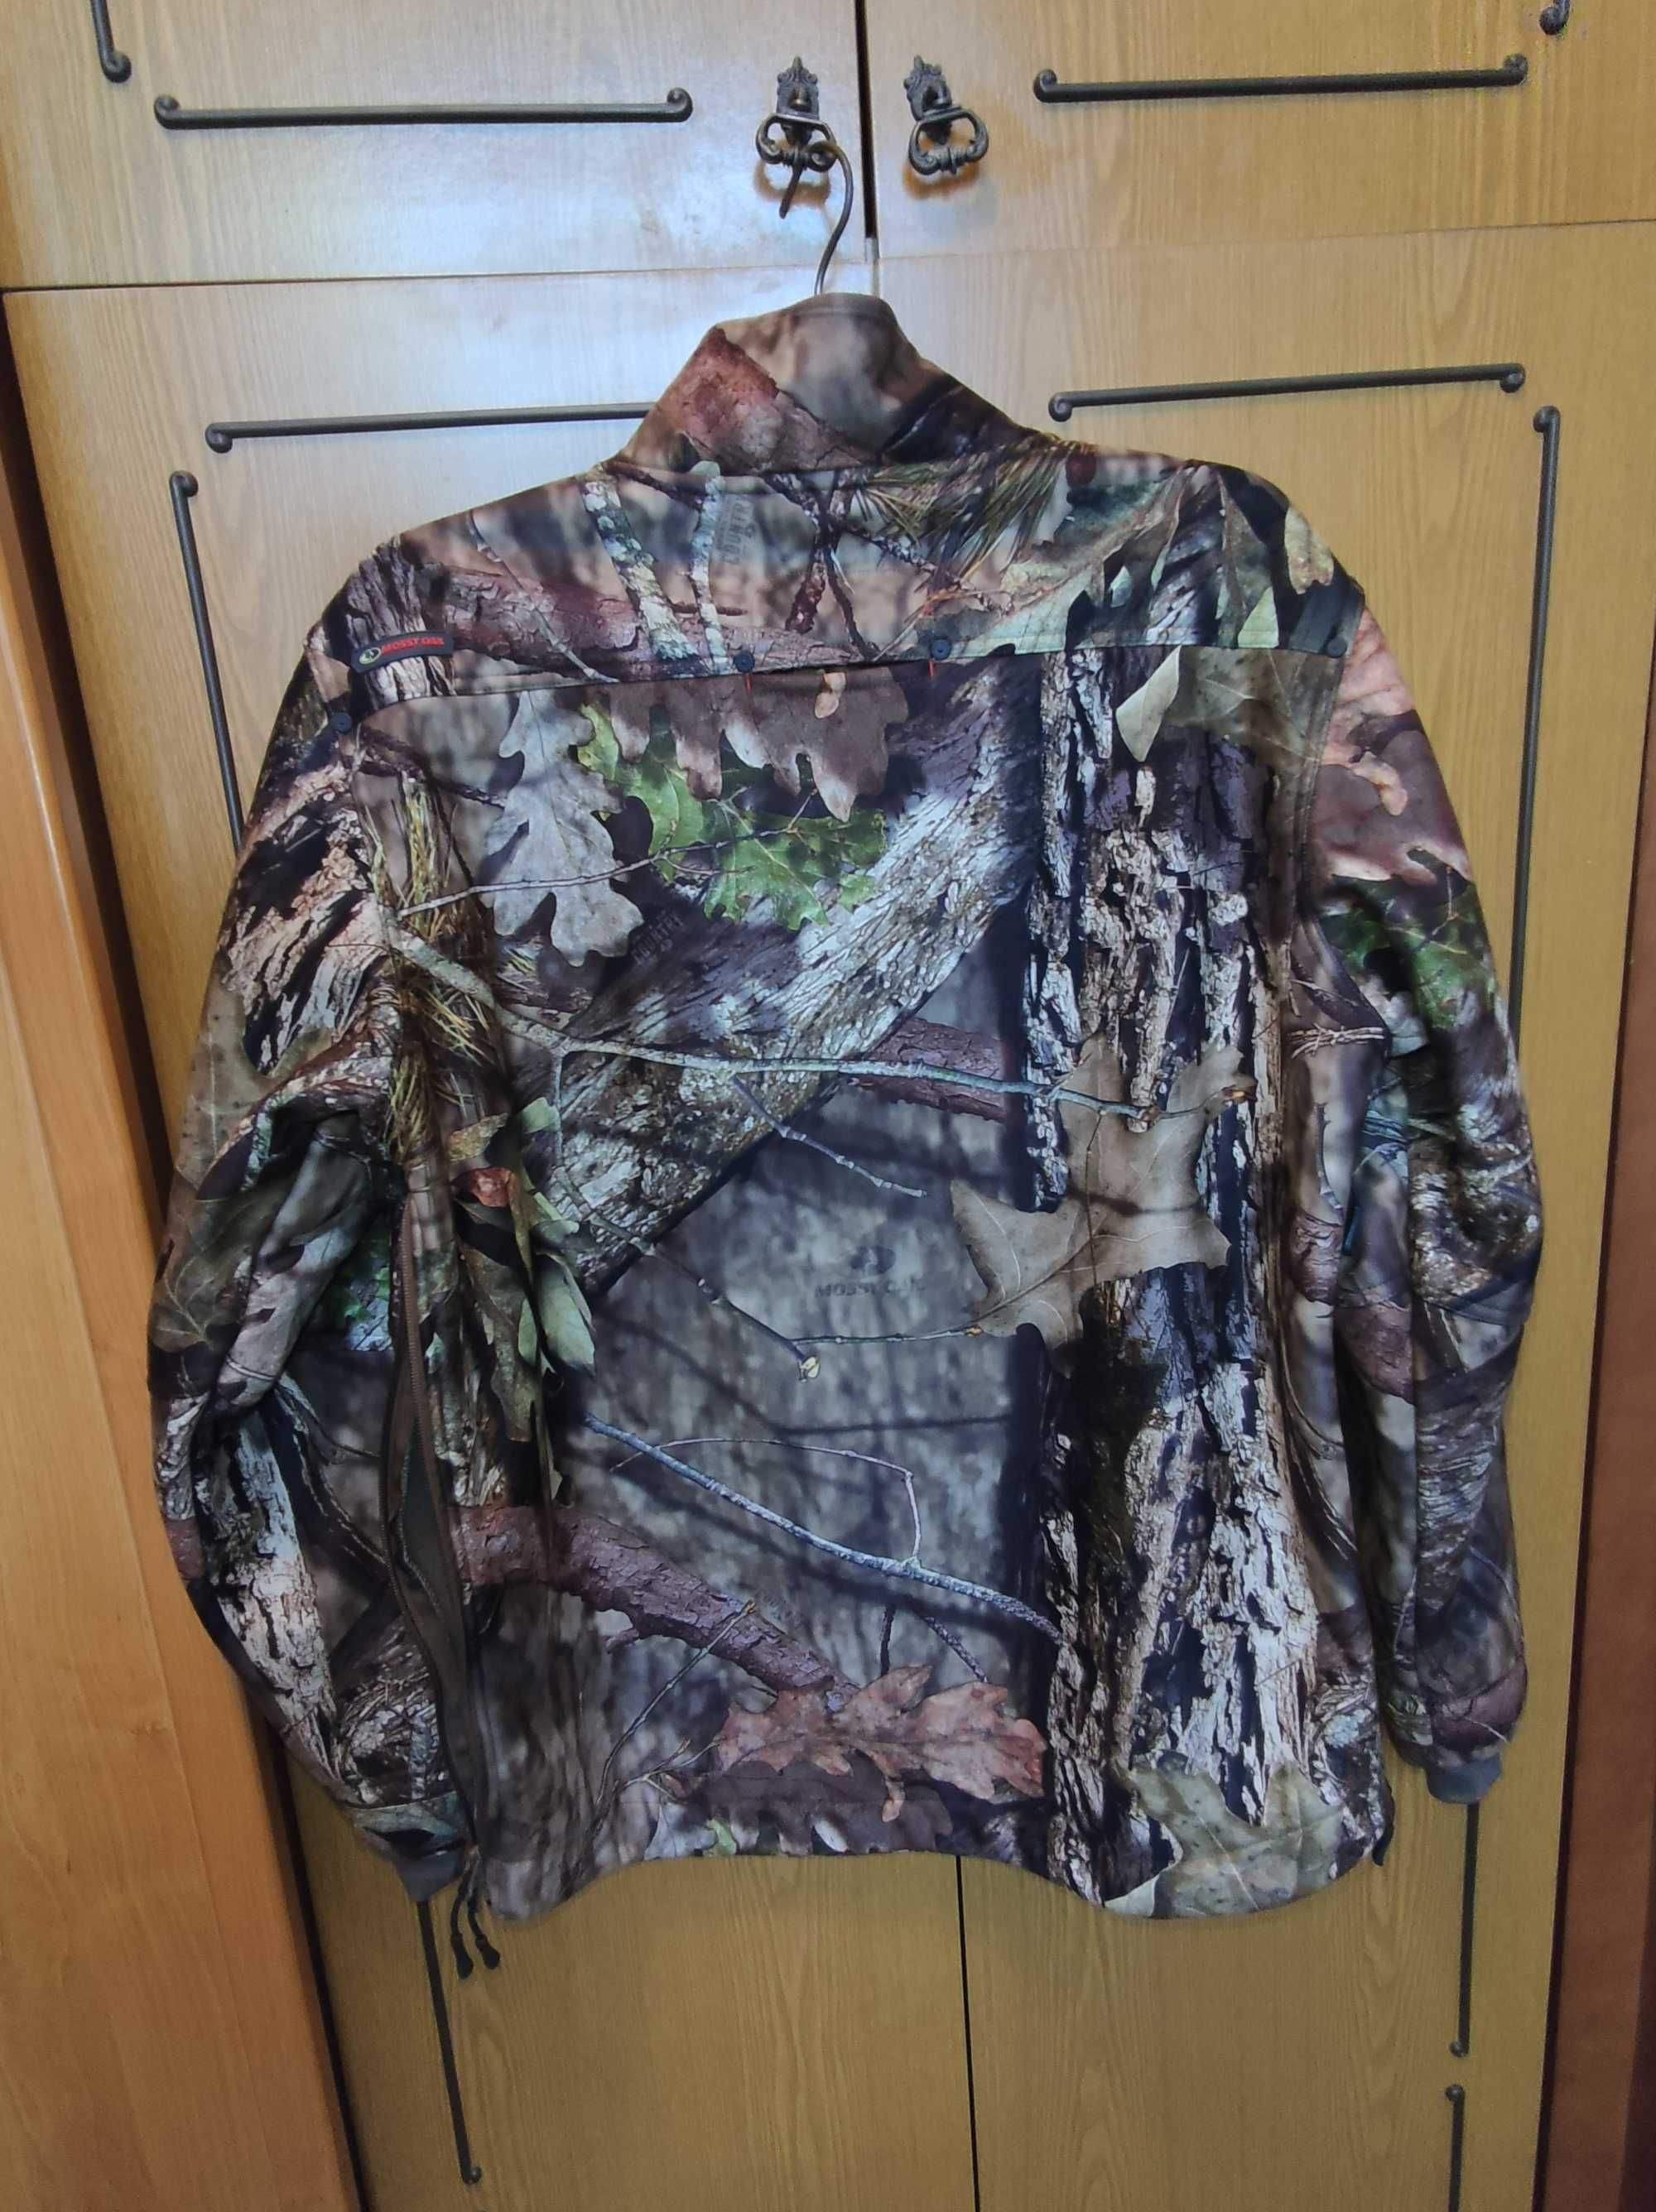 Mossy oak куртка на флисе размер ХL большой рост 190